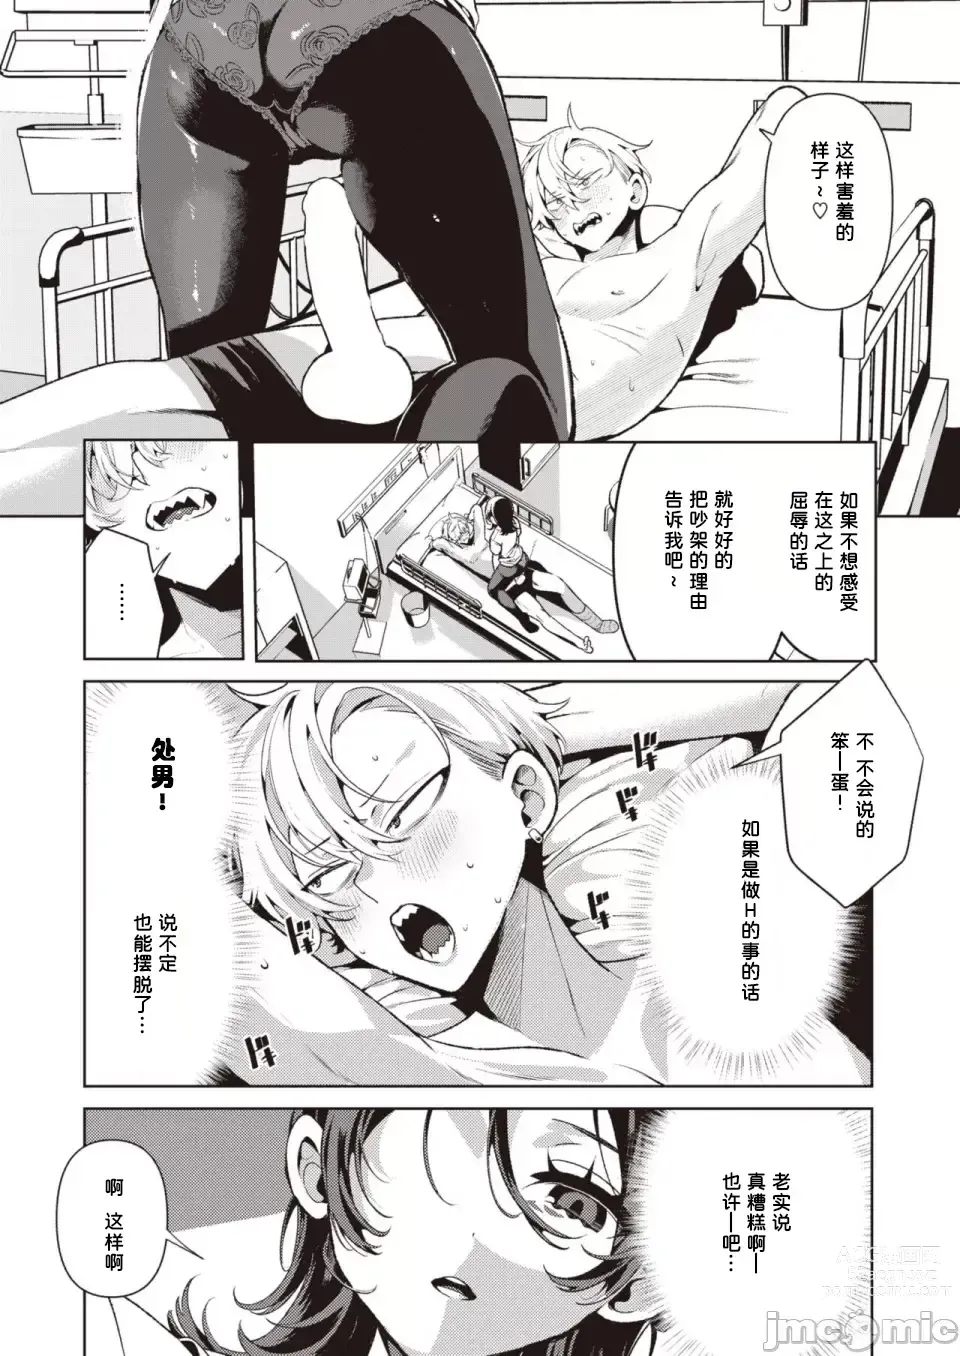 Page 13 of manga Yasashii? Nurse no Kirishima-san